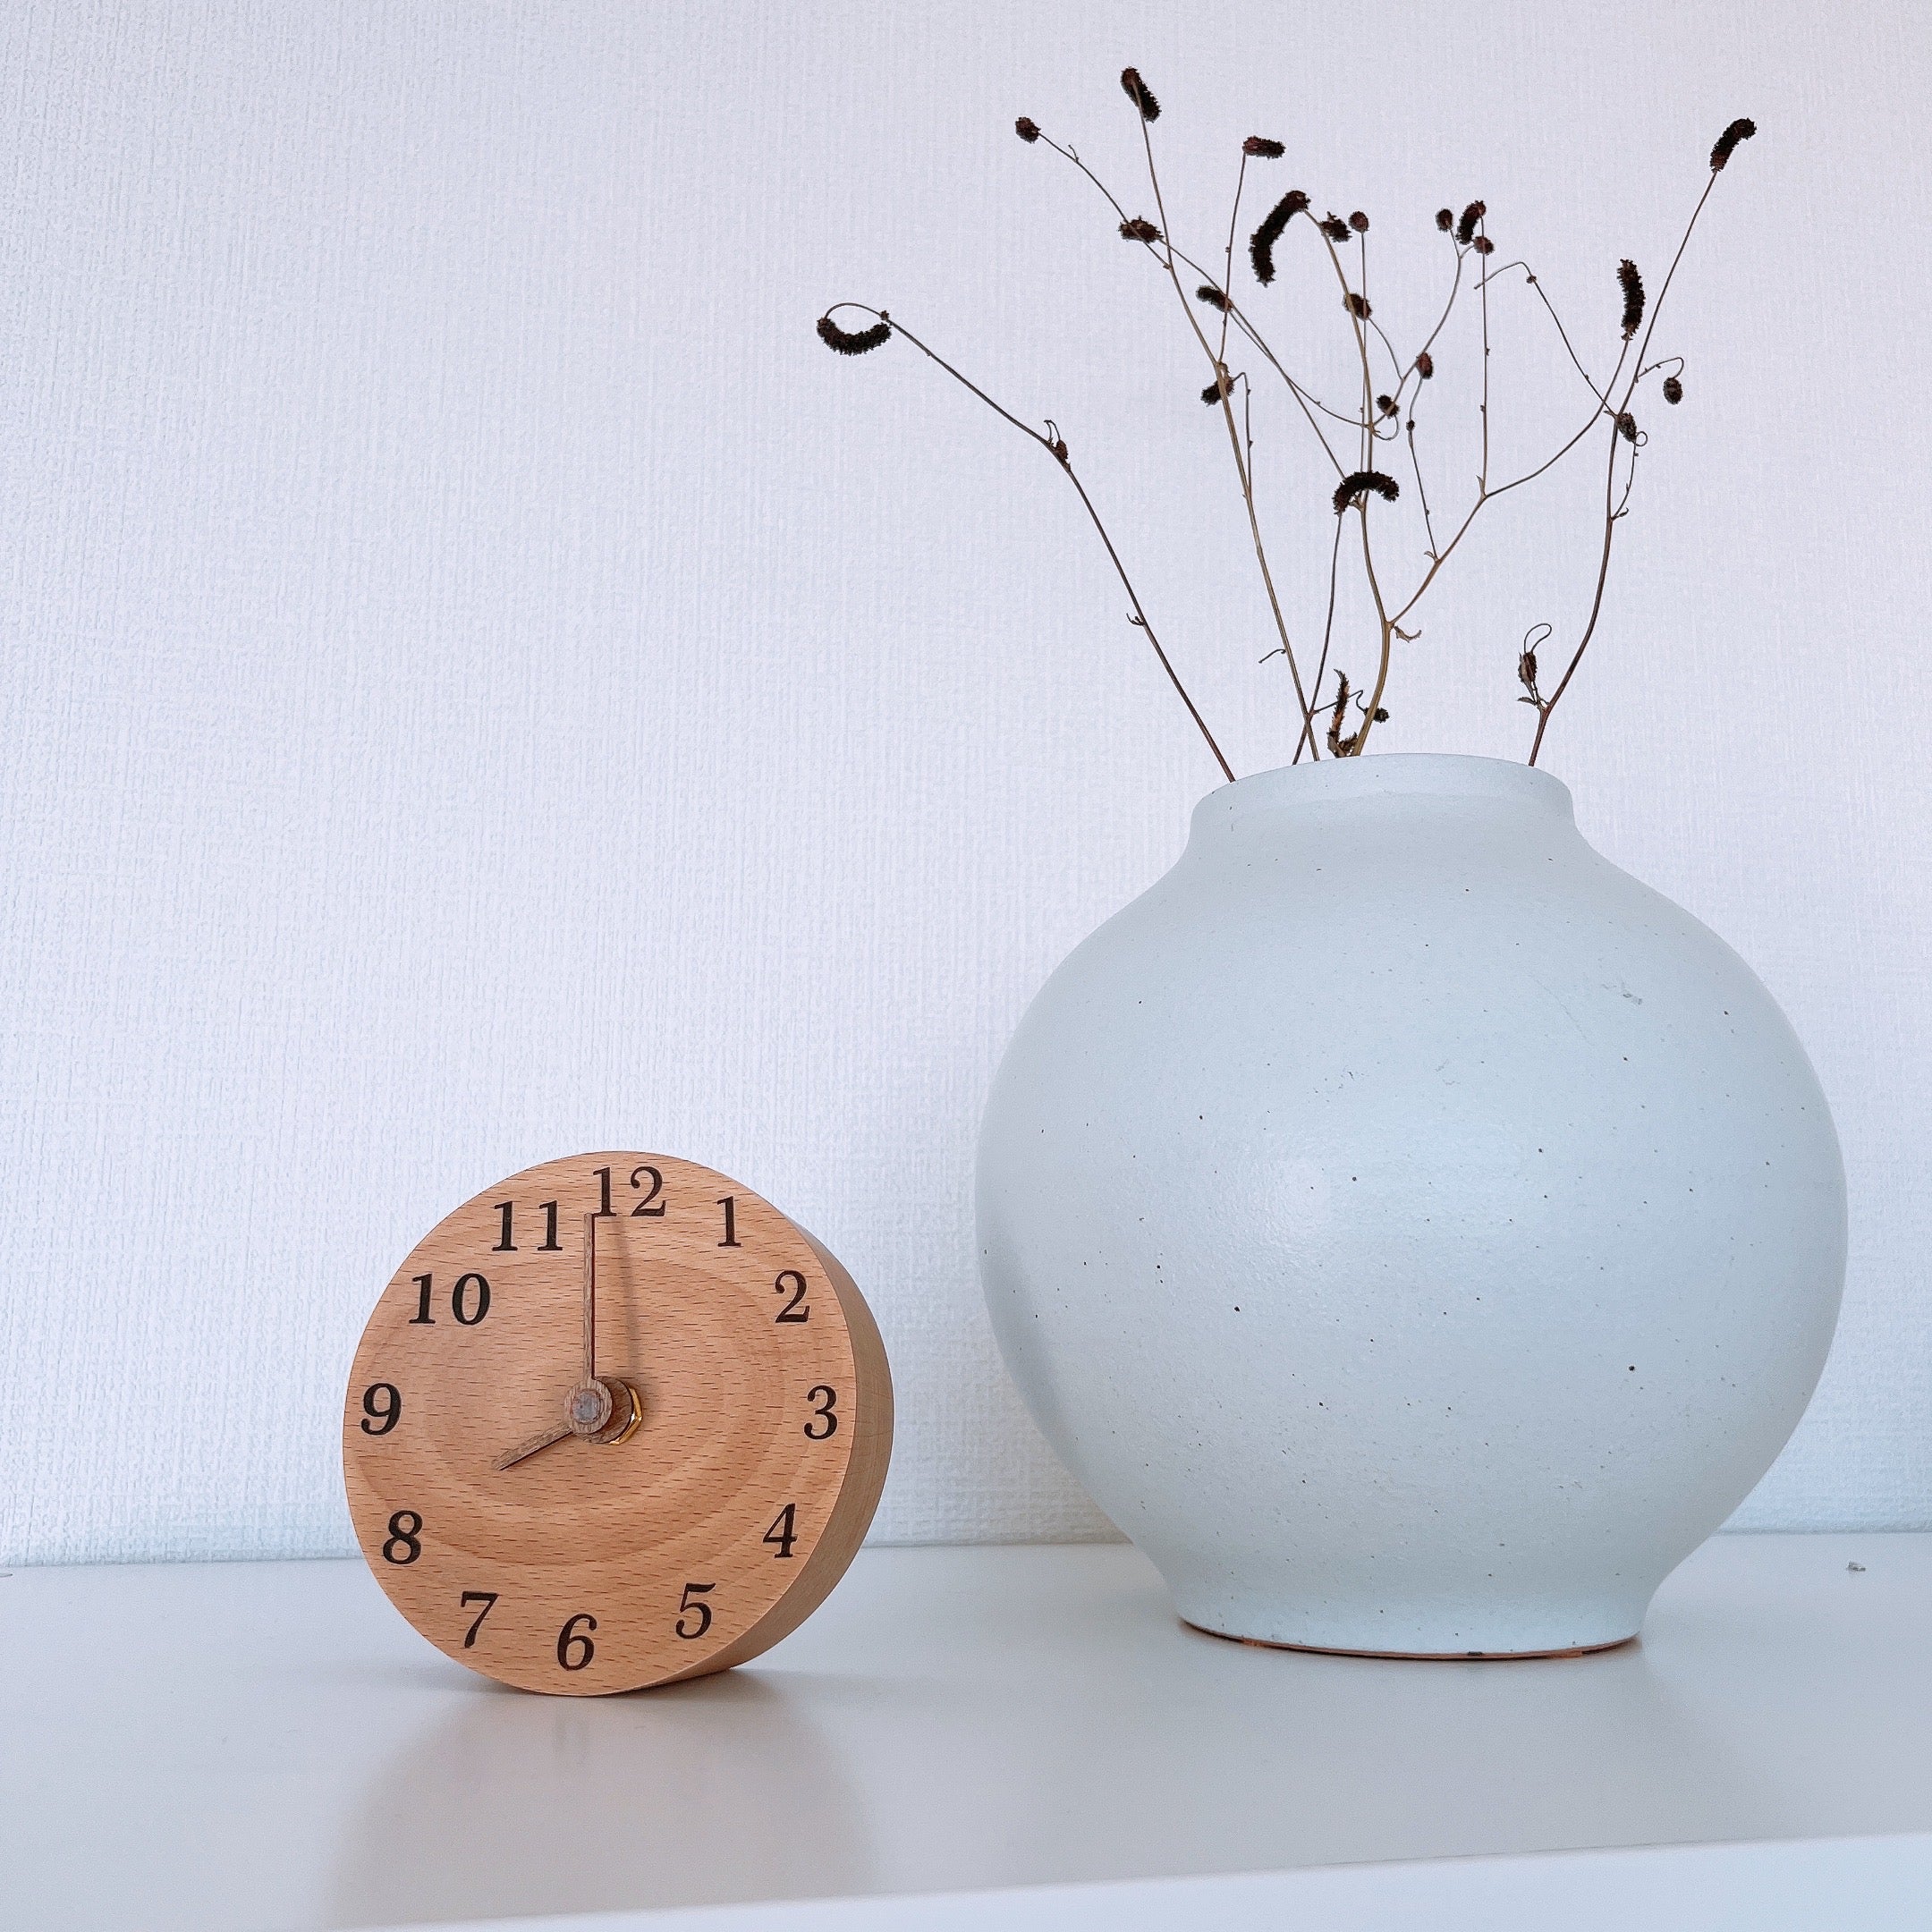 無垢の木 アナログ 置き時計 SHOW (文字あり) WOOD - インテリア時計